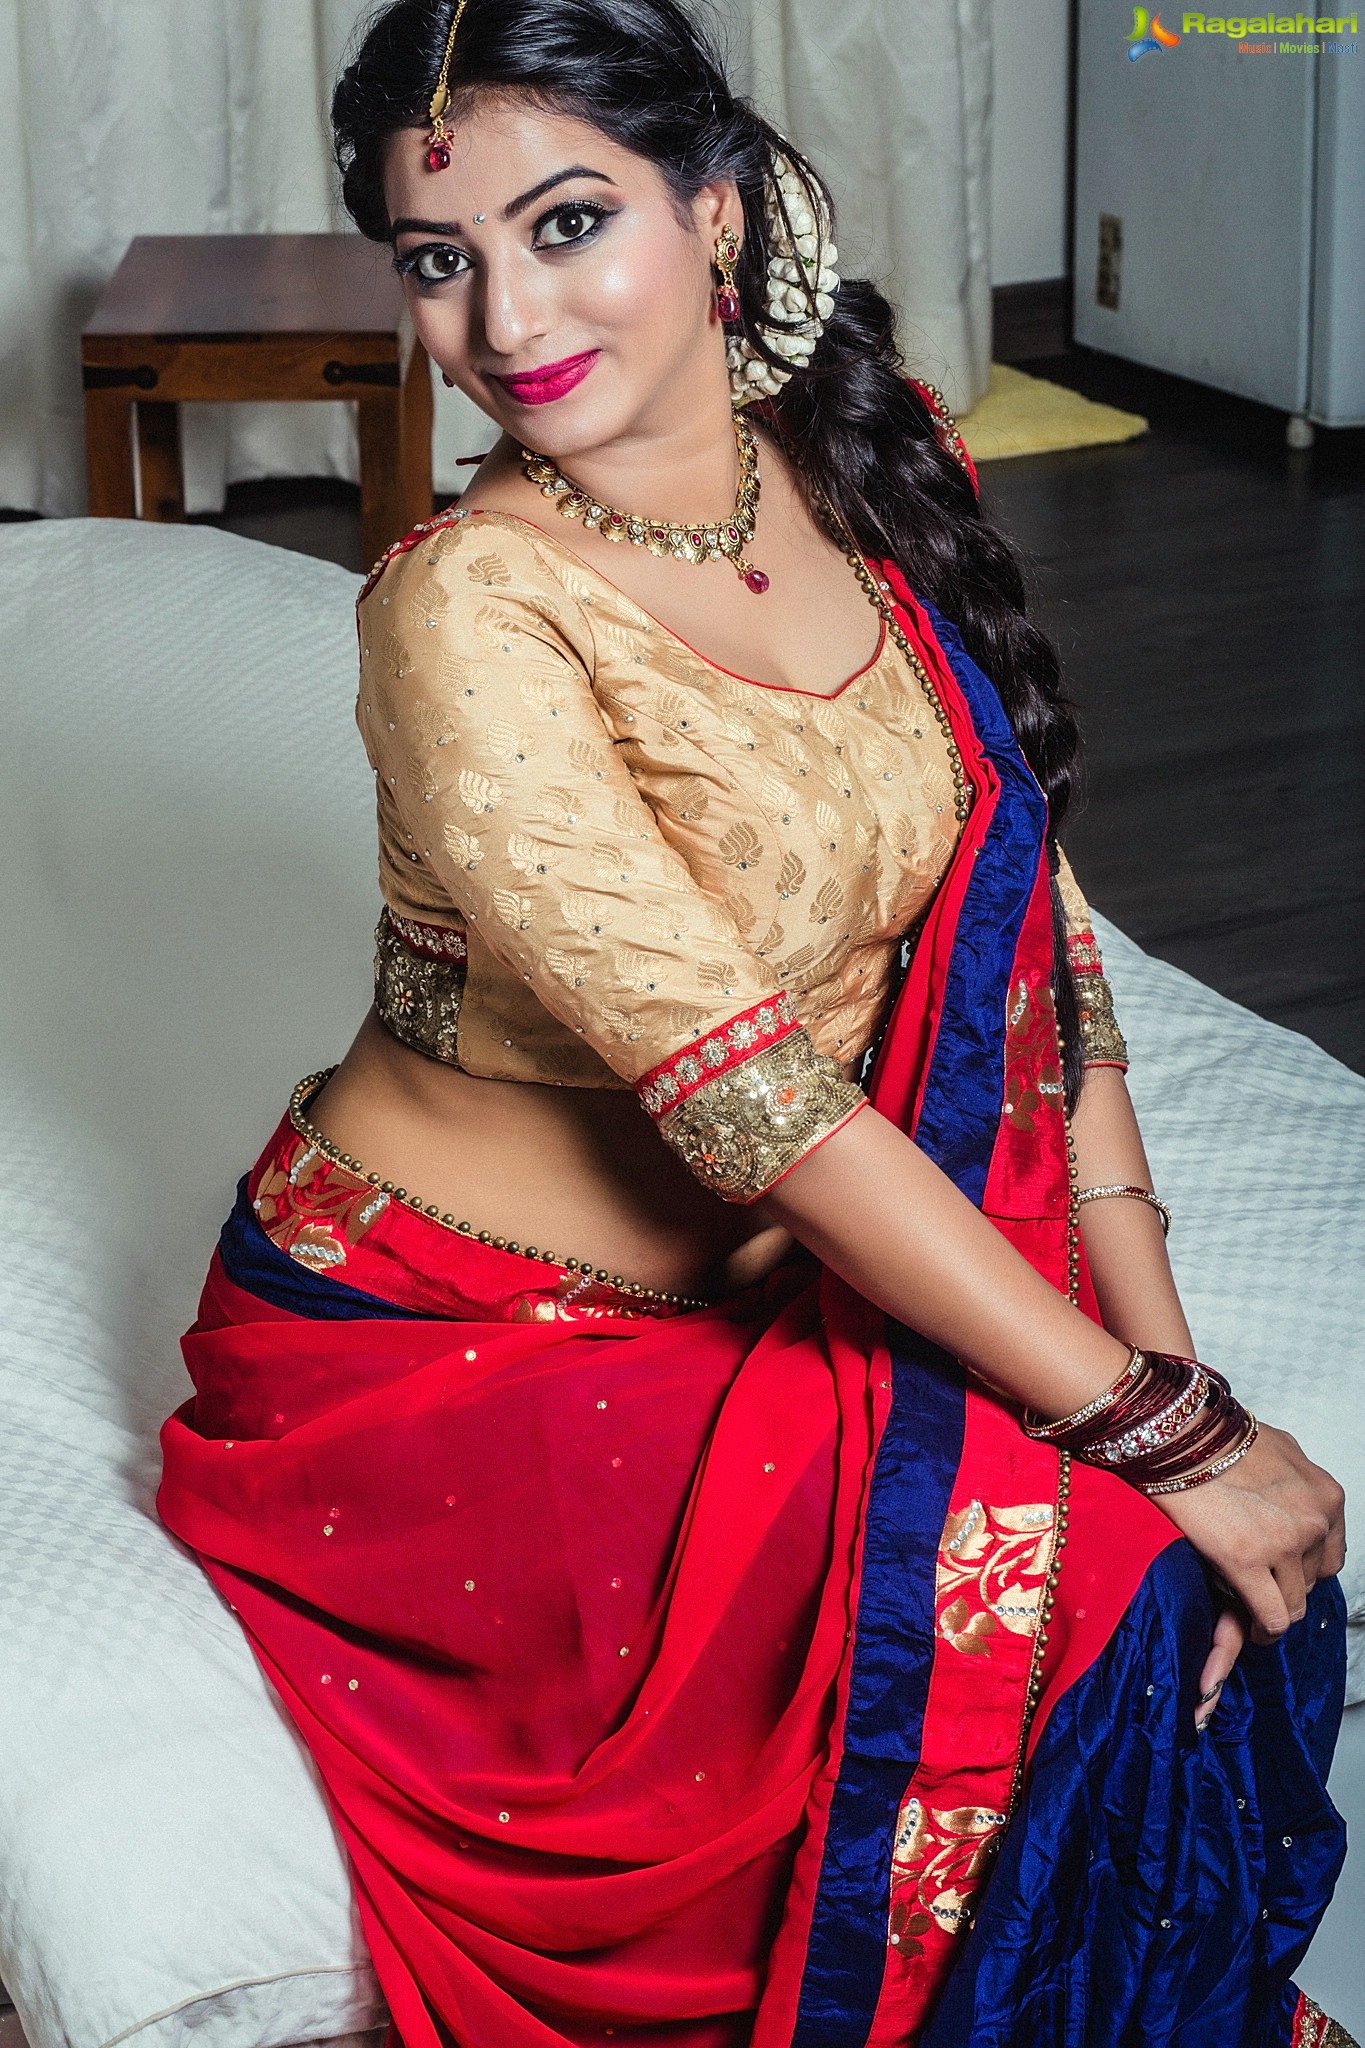 Tarunika Singh